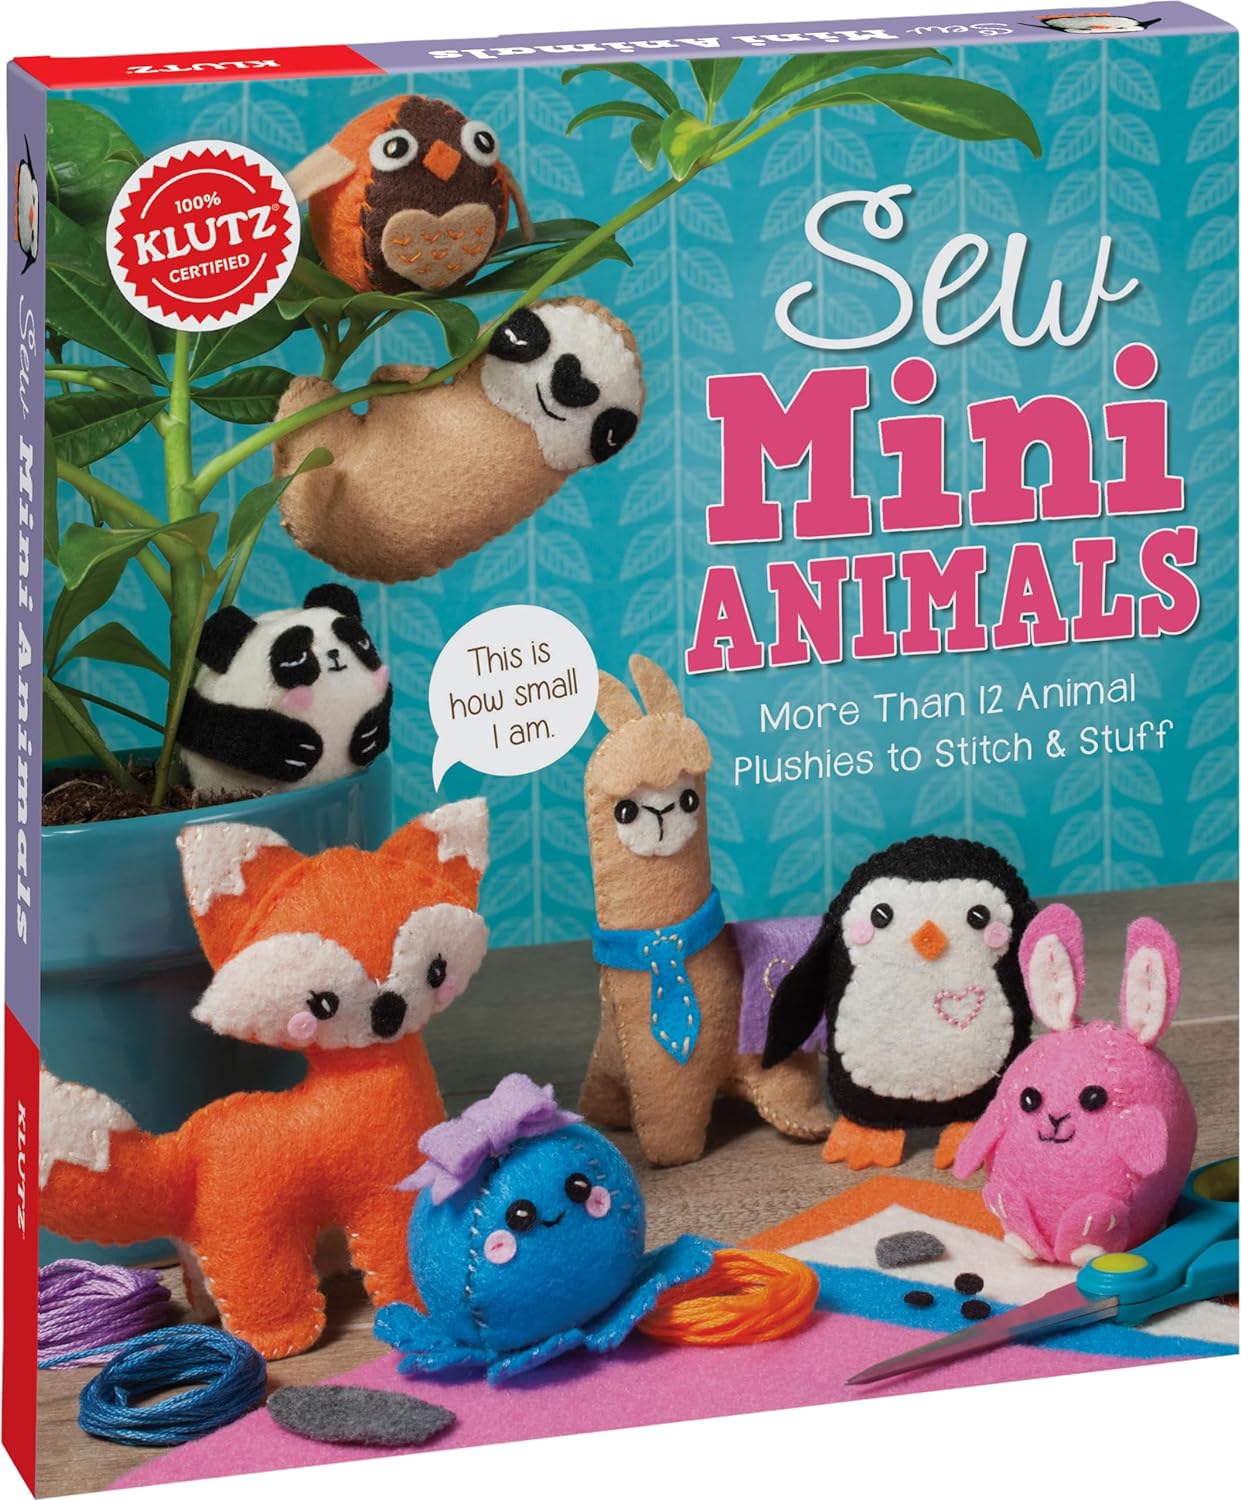 Sew Mini Animals (Klutz Craft Kit) 8" Length x 1.5" Width x 9" Height